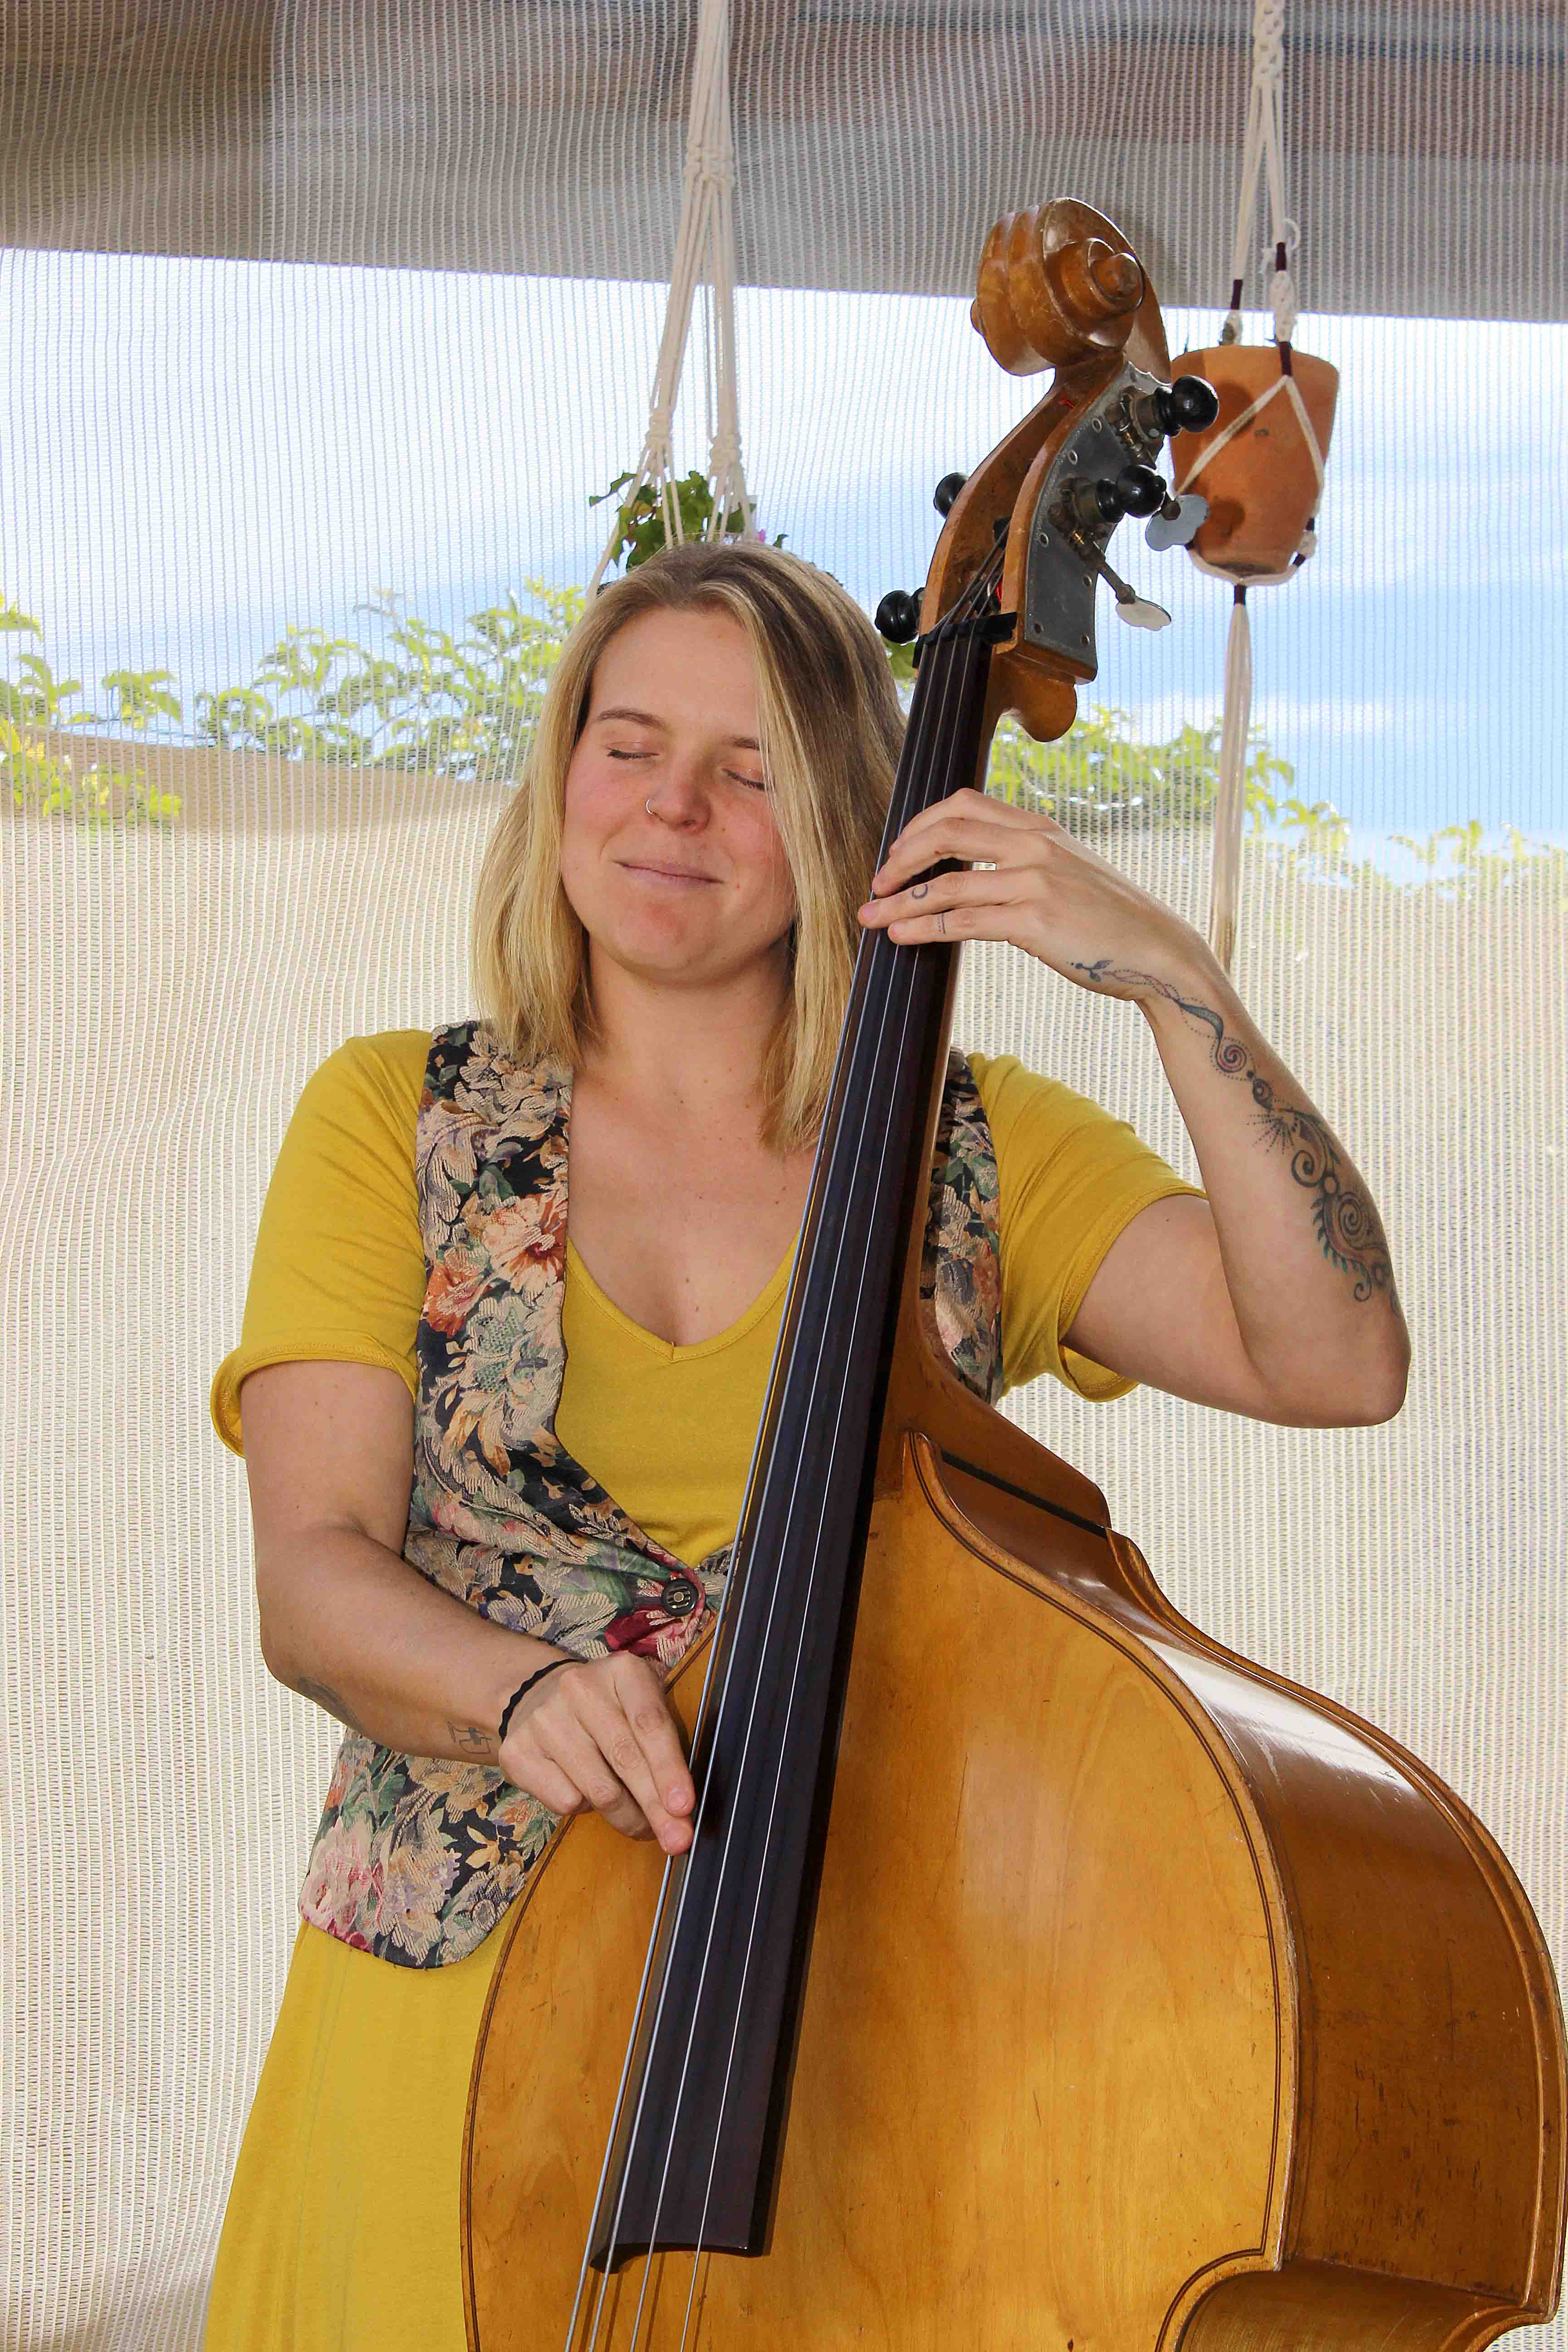 Sarah Blake playing the cello.